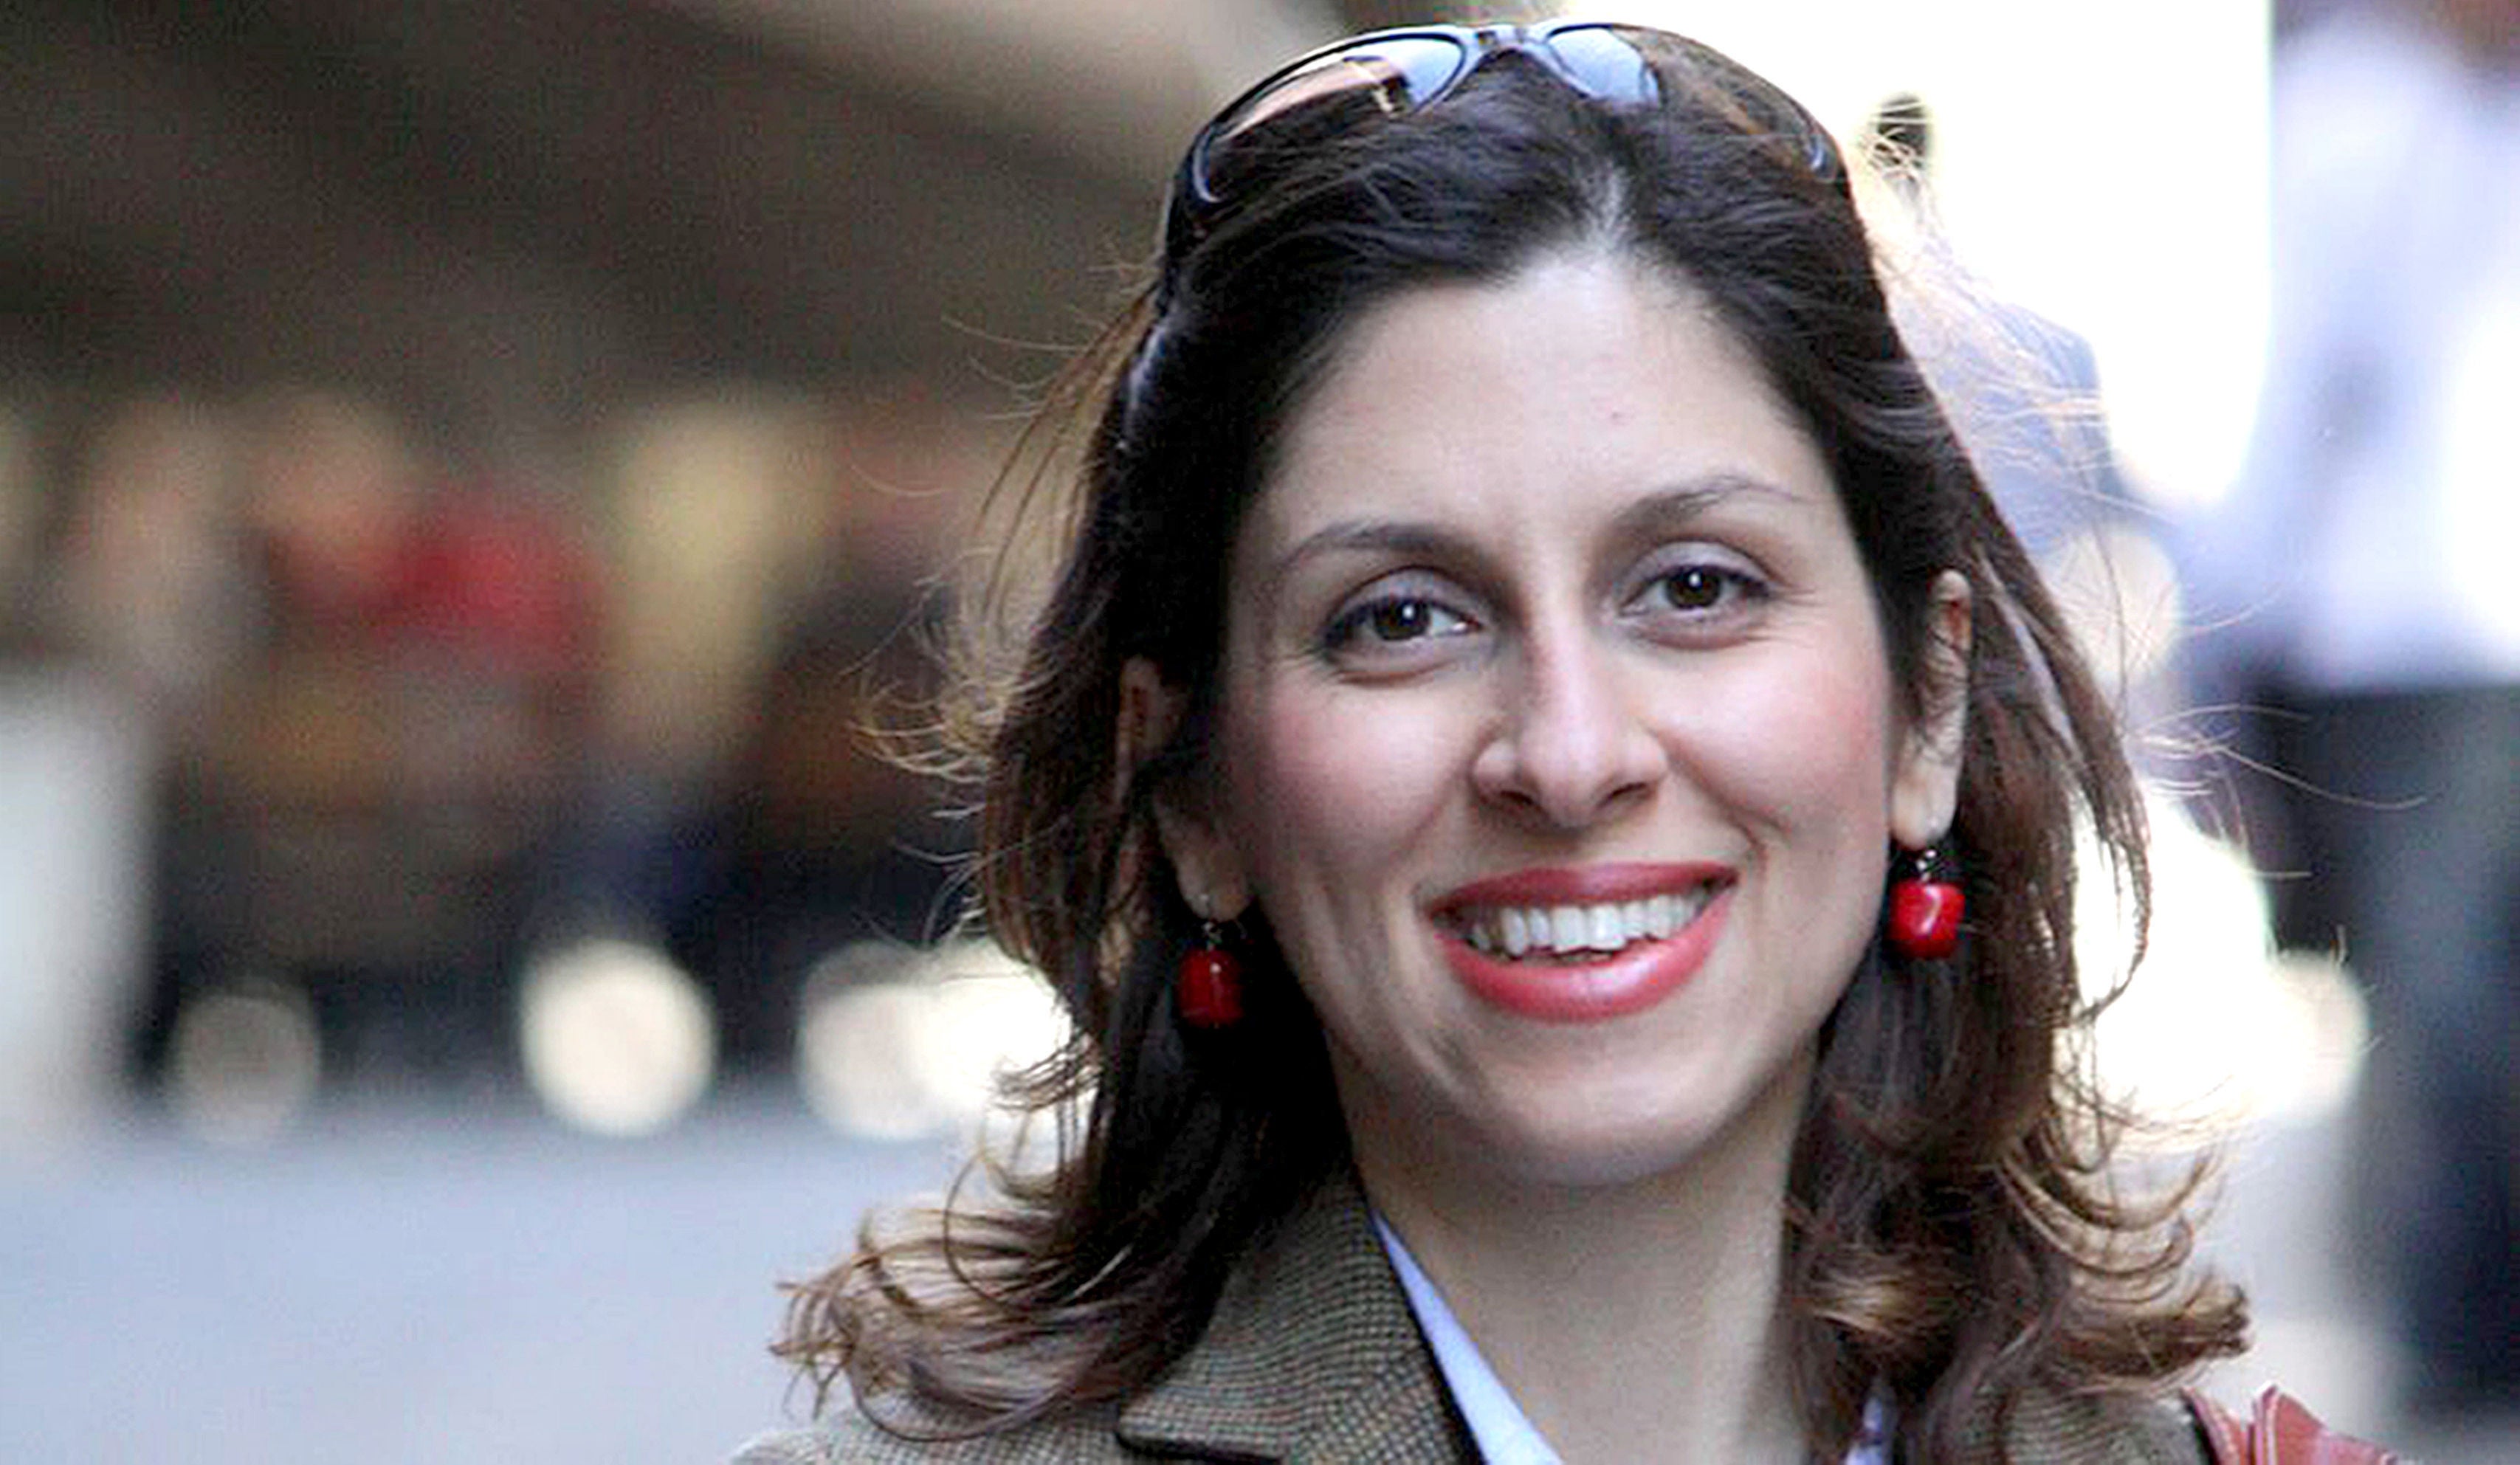 La joven con doble nacionalidad británico-iraní ahora enfrenta nuevos cargos aún no especificados.